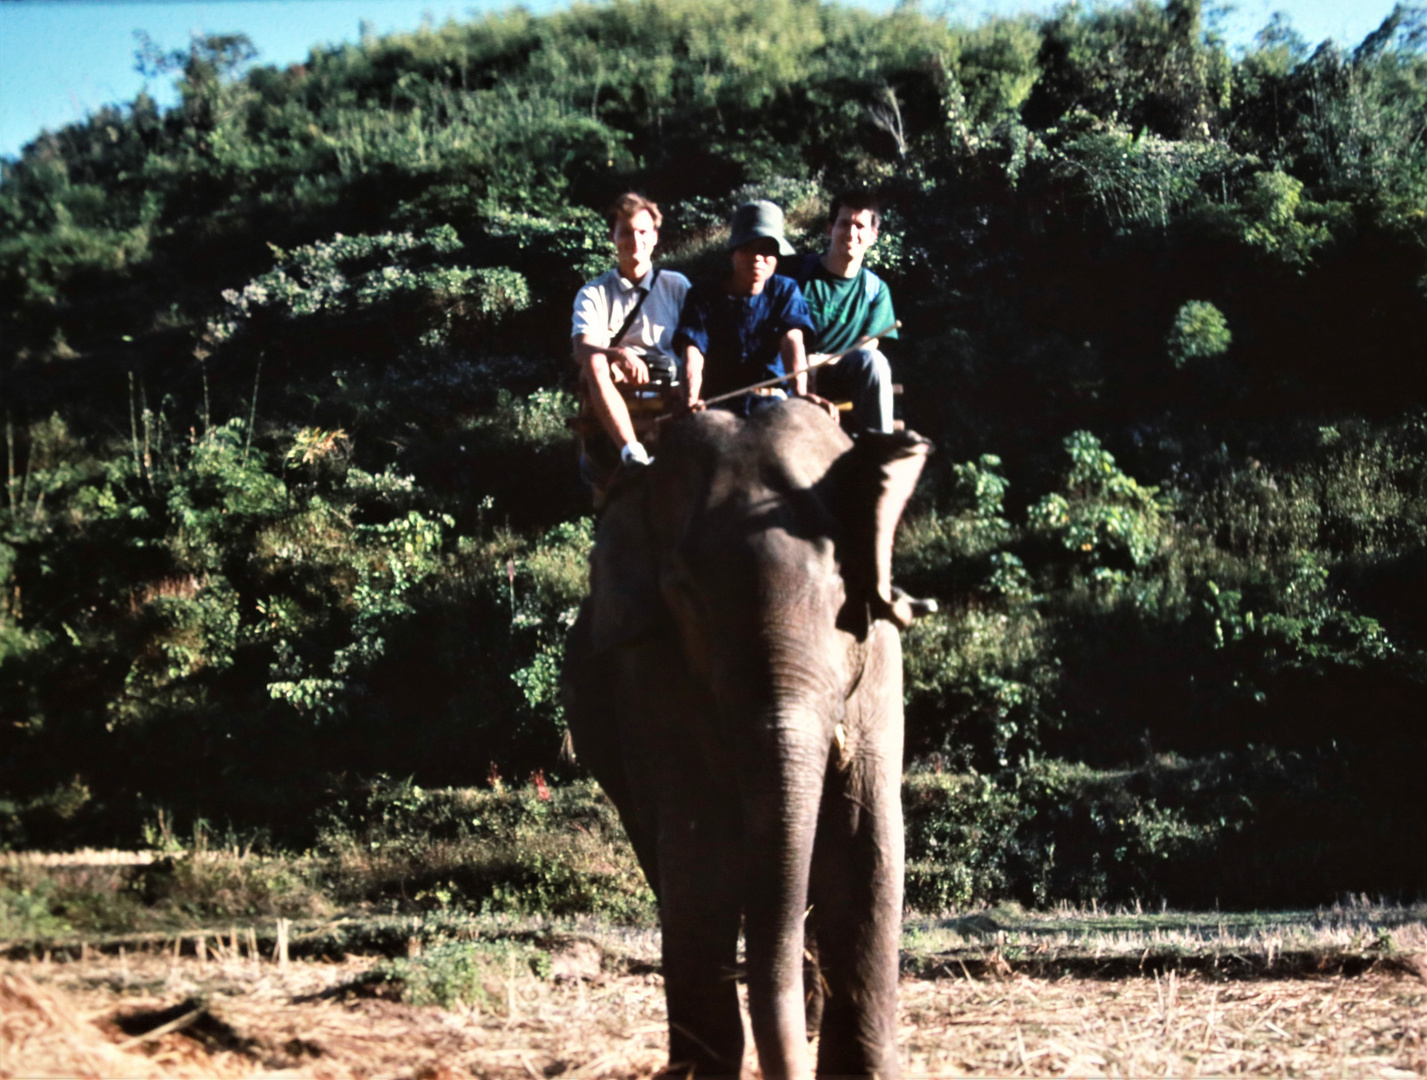 Elefant mit Touristen Thailand